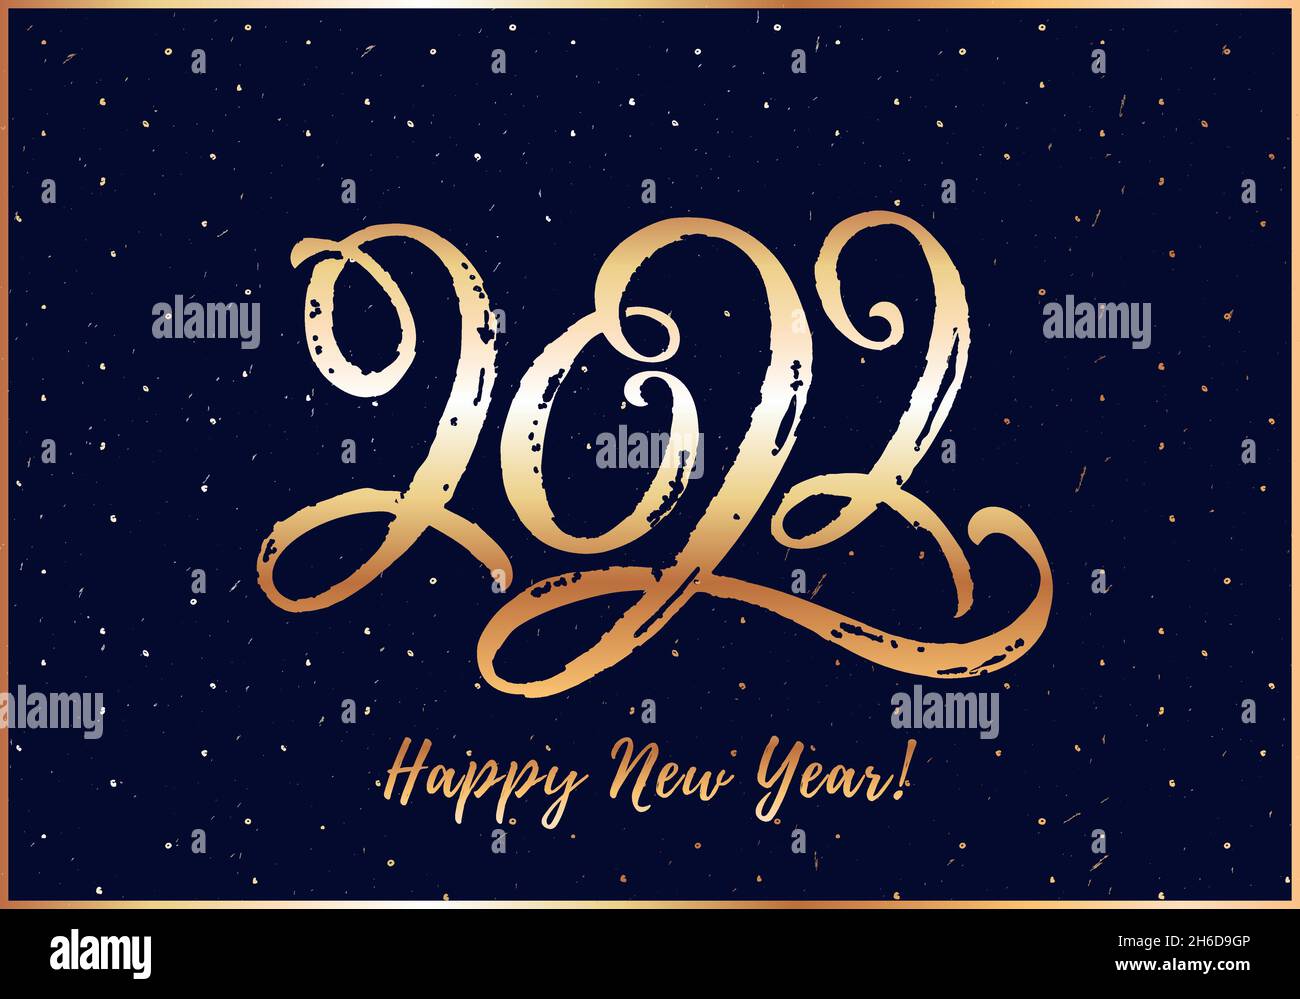 Glückwunschkarte zum neuen Jahr mit Schriftzug 2022. Horizontales Banner mit goldenen, handgezeichneten Figuren. Vektorgrafik. Stock Vektor